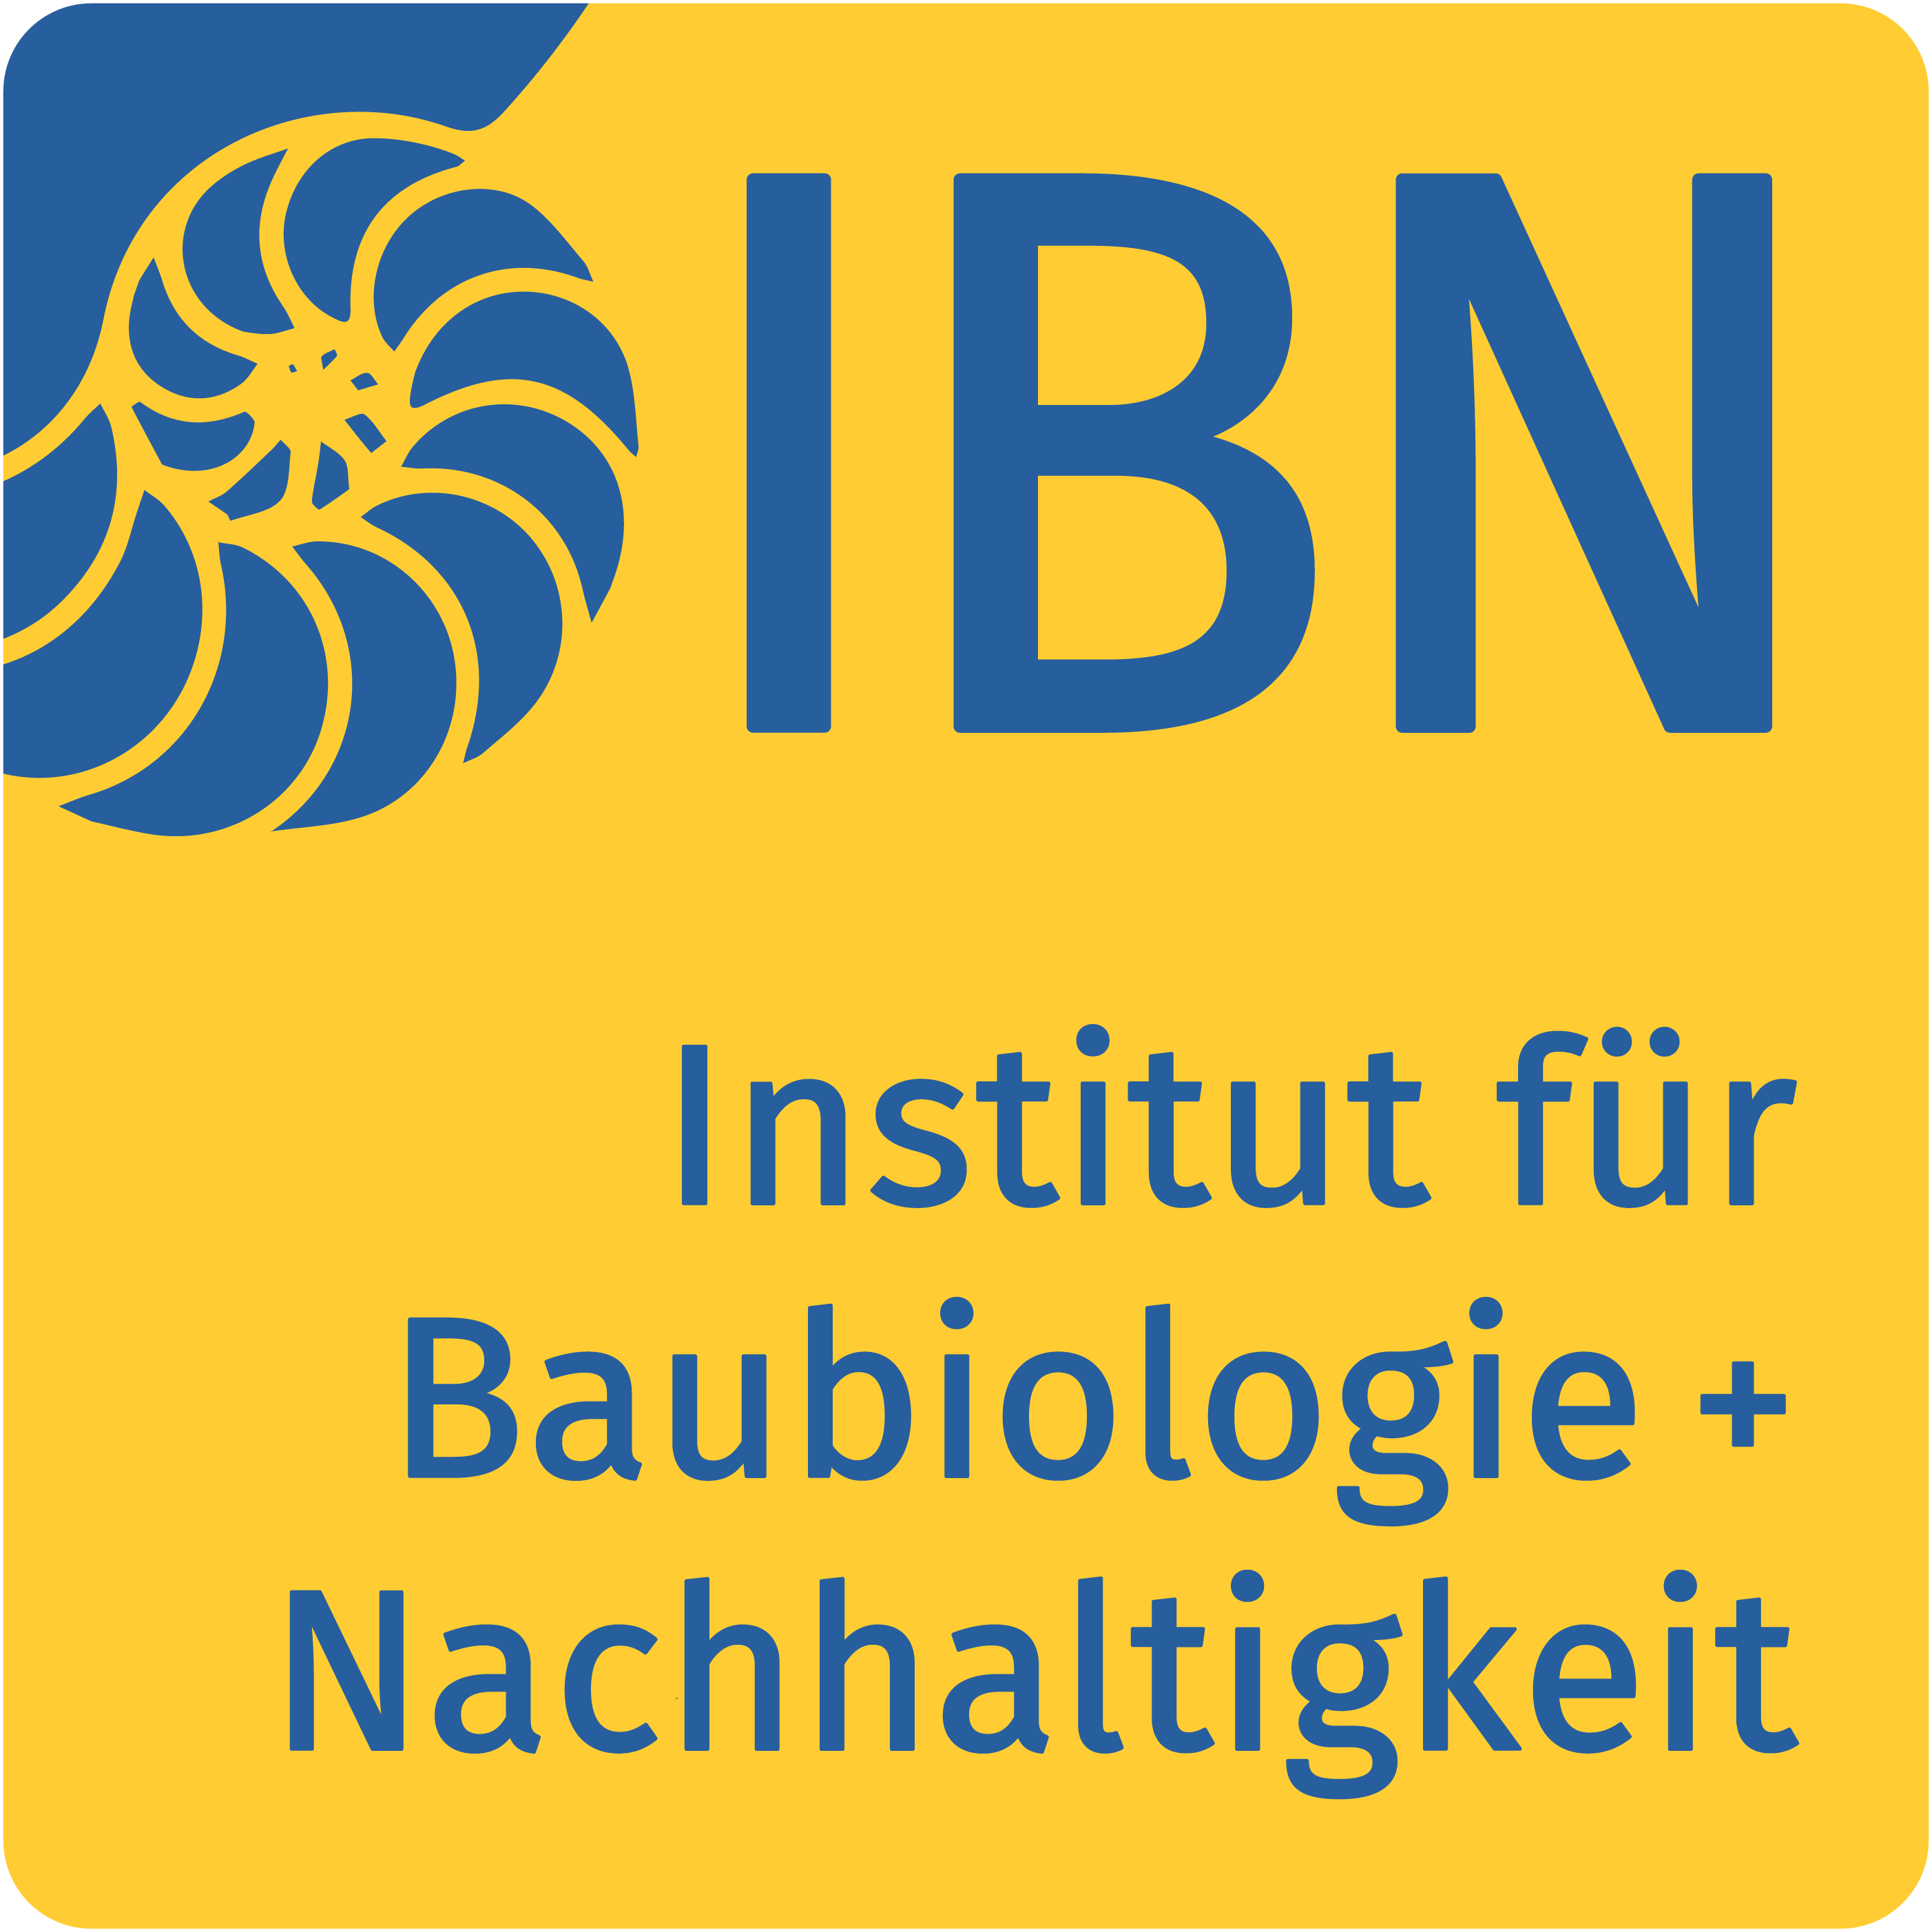 Logo Institut für Baubiologie + Nachhaltigkeit IBN